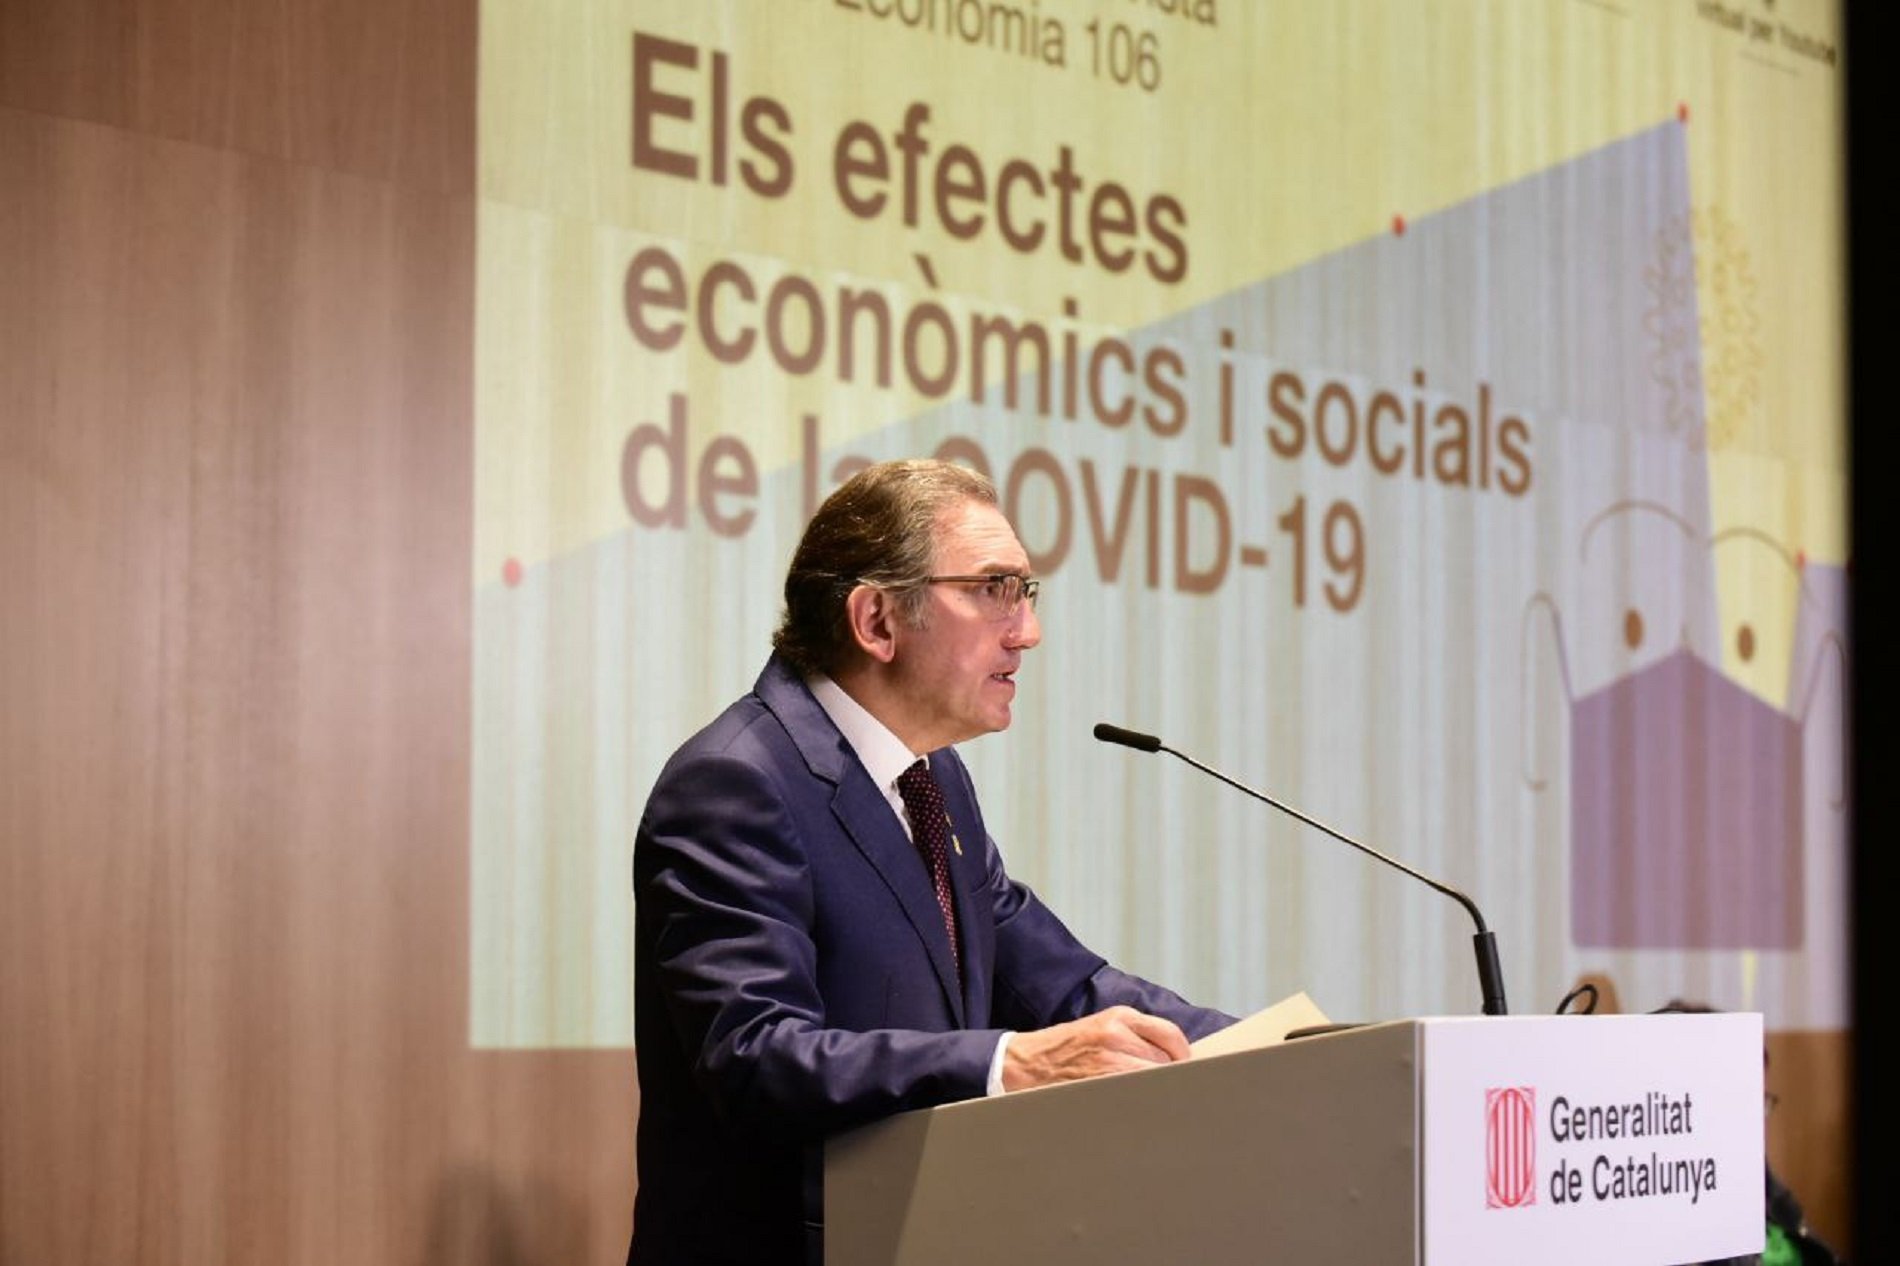 Giró critica l'Estat per prioritzar el centralisme als interessos de Catalunya